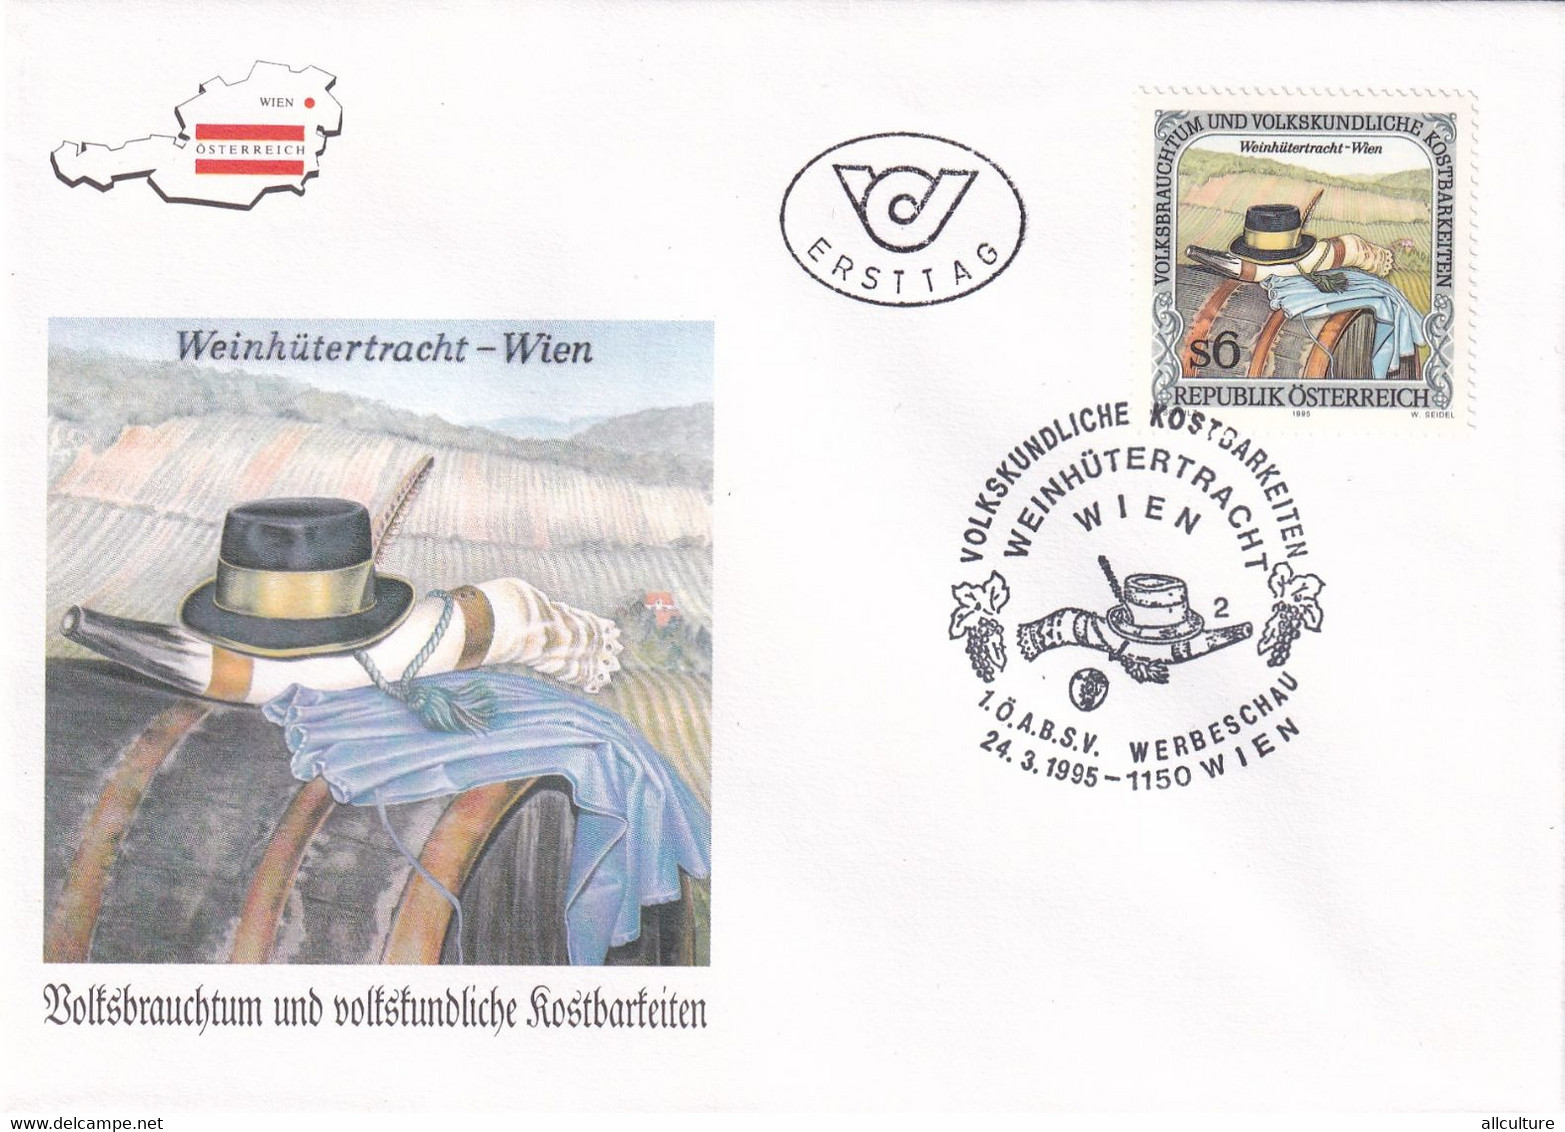 A8187 - WEINHUTERTRACHT, WEIN, ERSTTAG 1995  REPUBLIC OESTERREICH USED STAMP ON COVER AUSTRIA - Briefe U. Dokumente